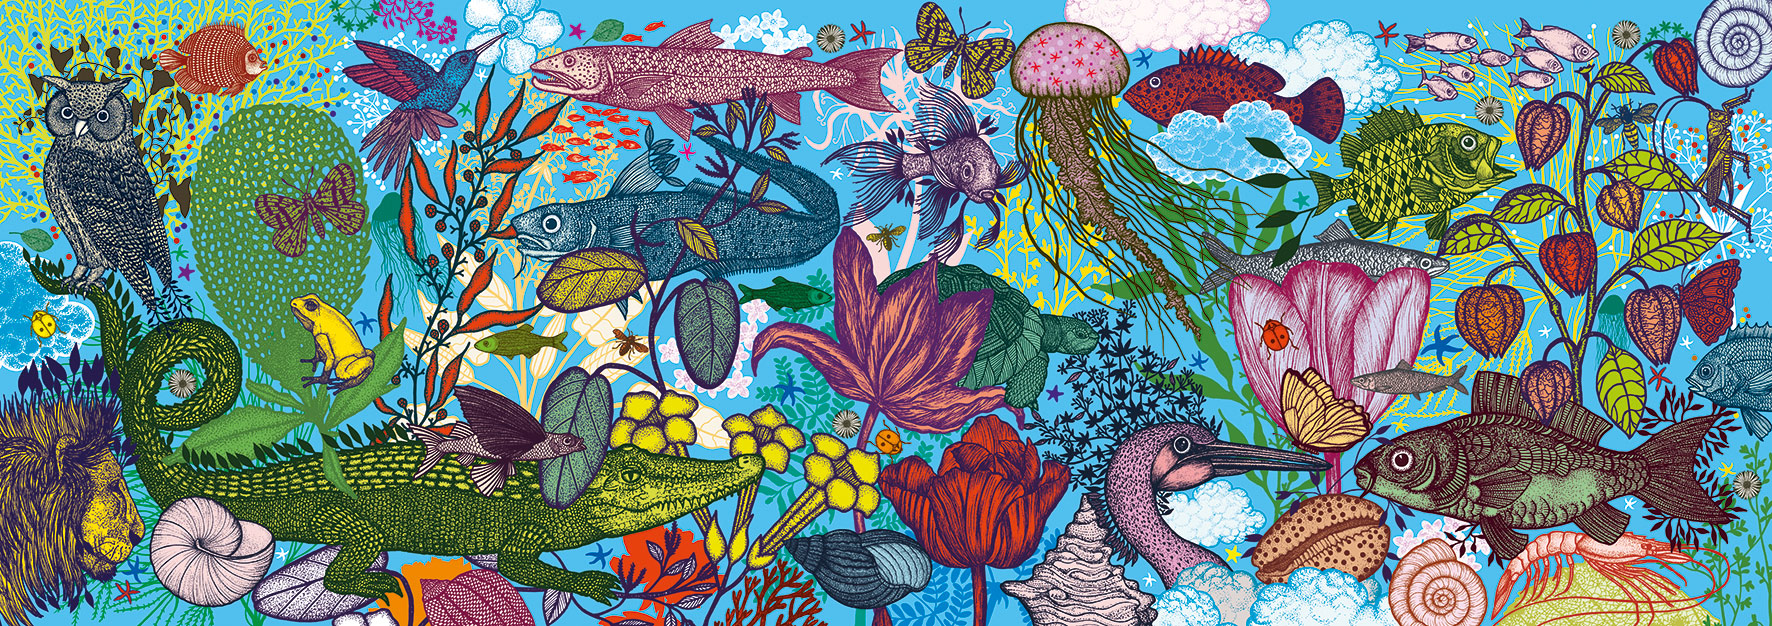 Land and Sea Sea Life Jigsaw Puzzle